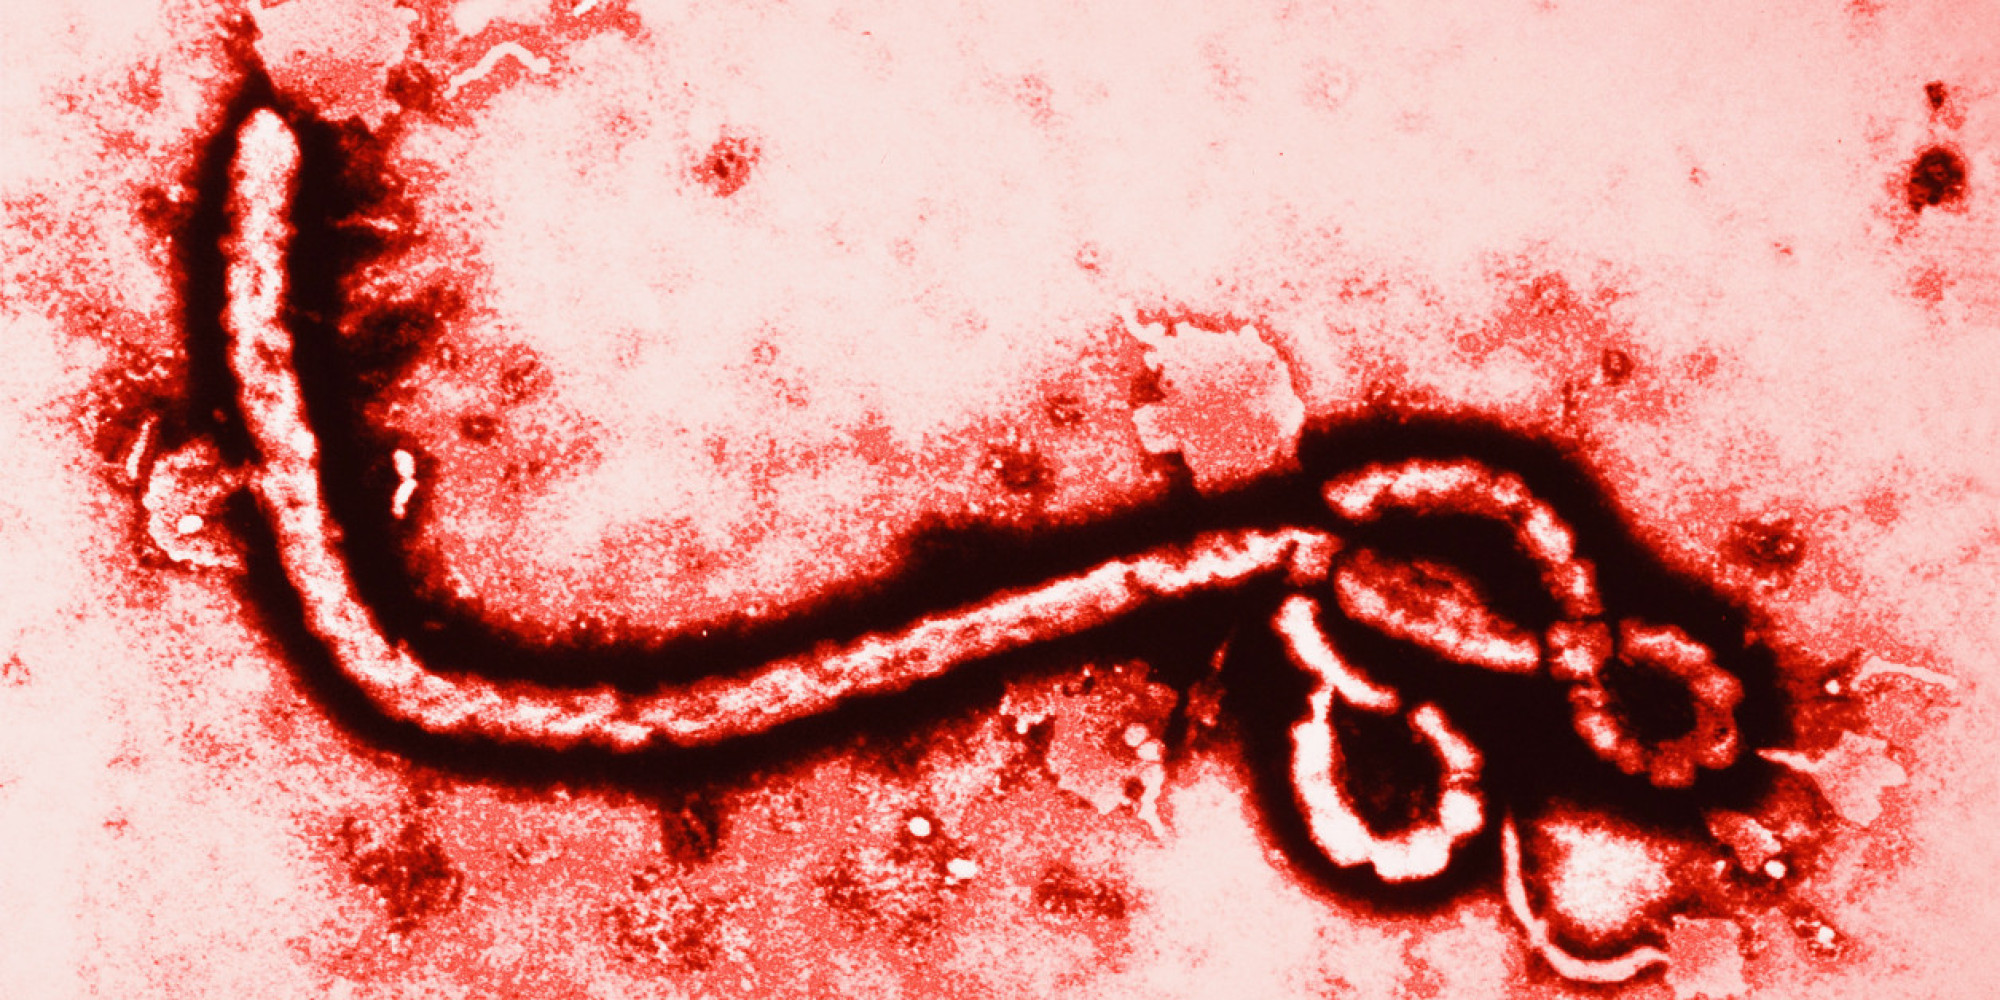 Ebola - Megkezdték az ellenőrzéseket a csehországi repülőtereken